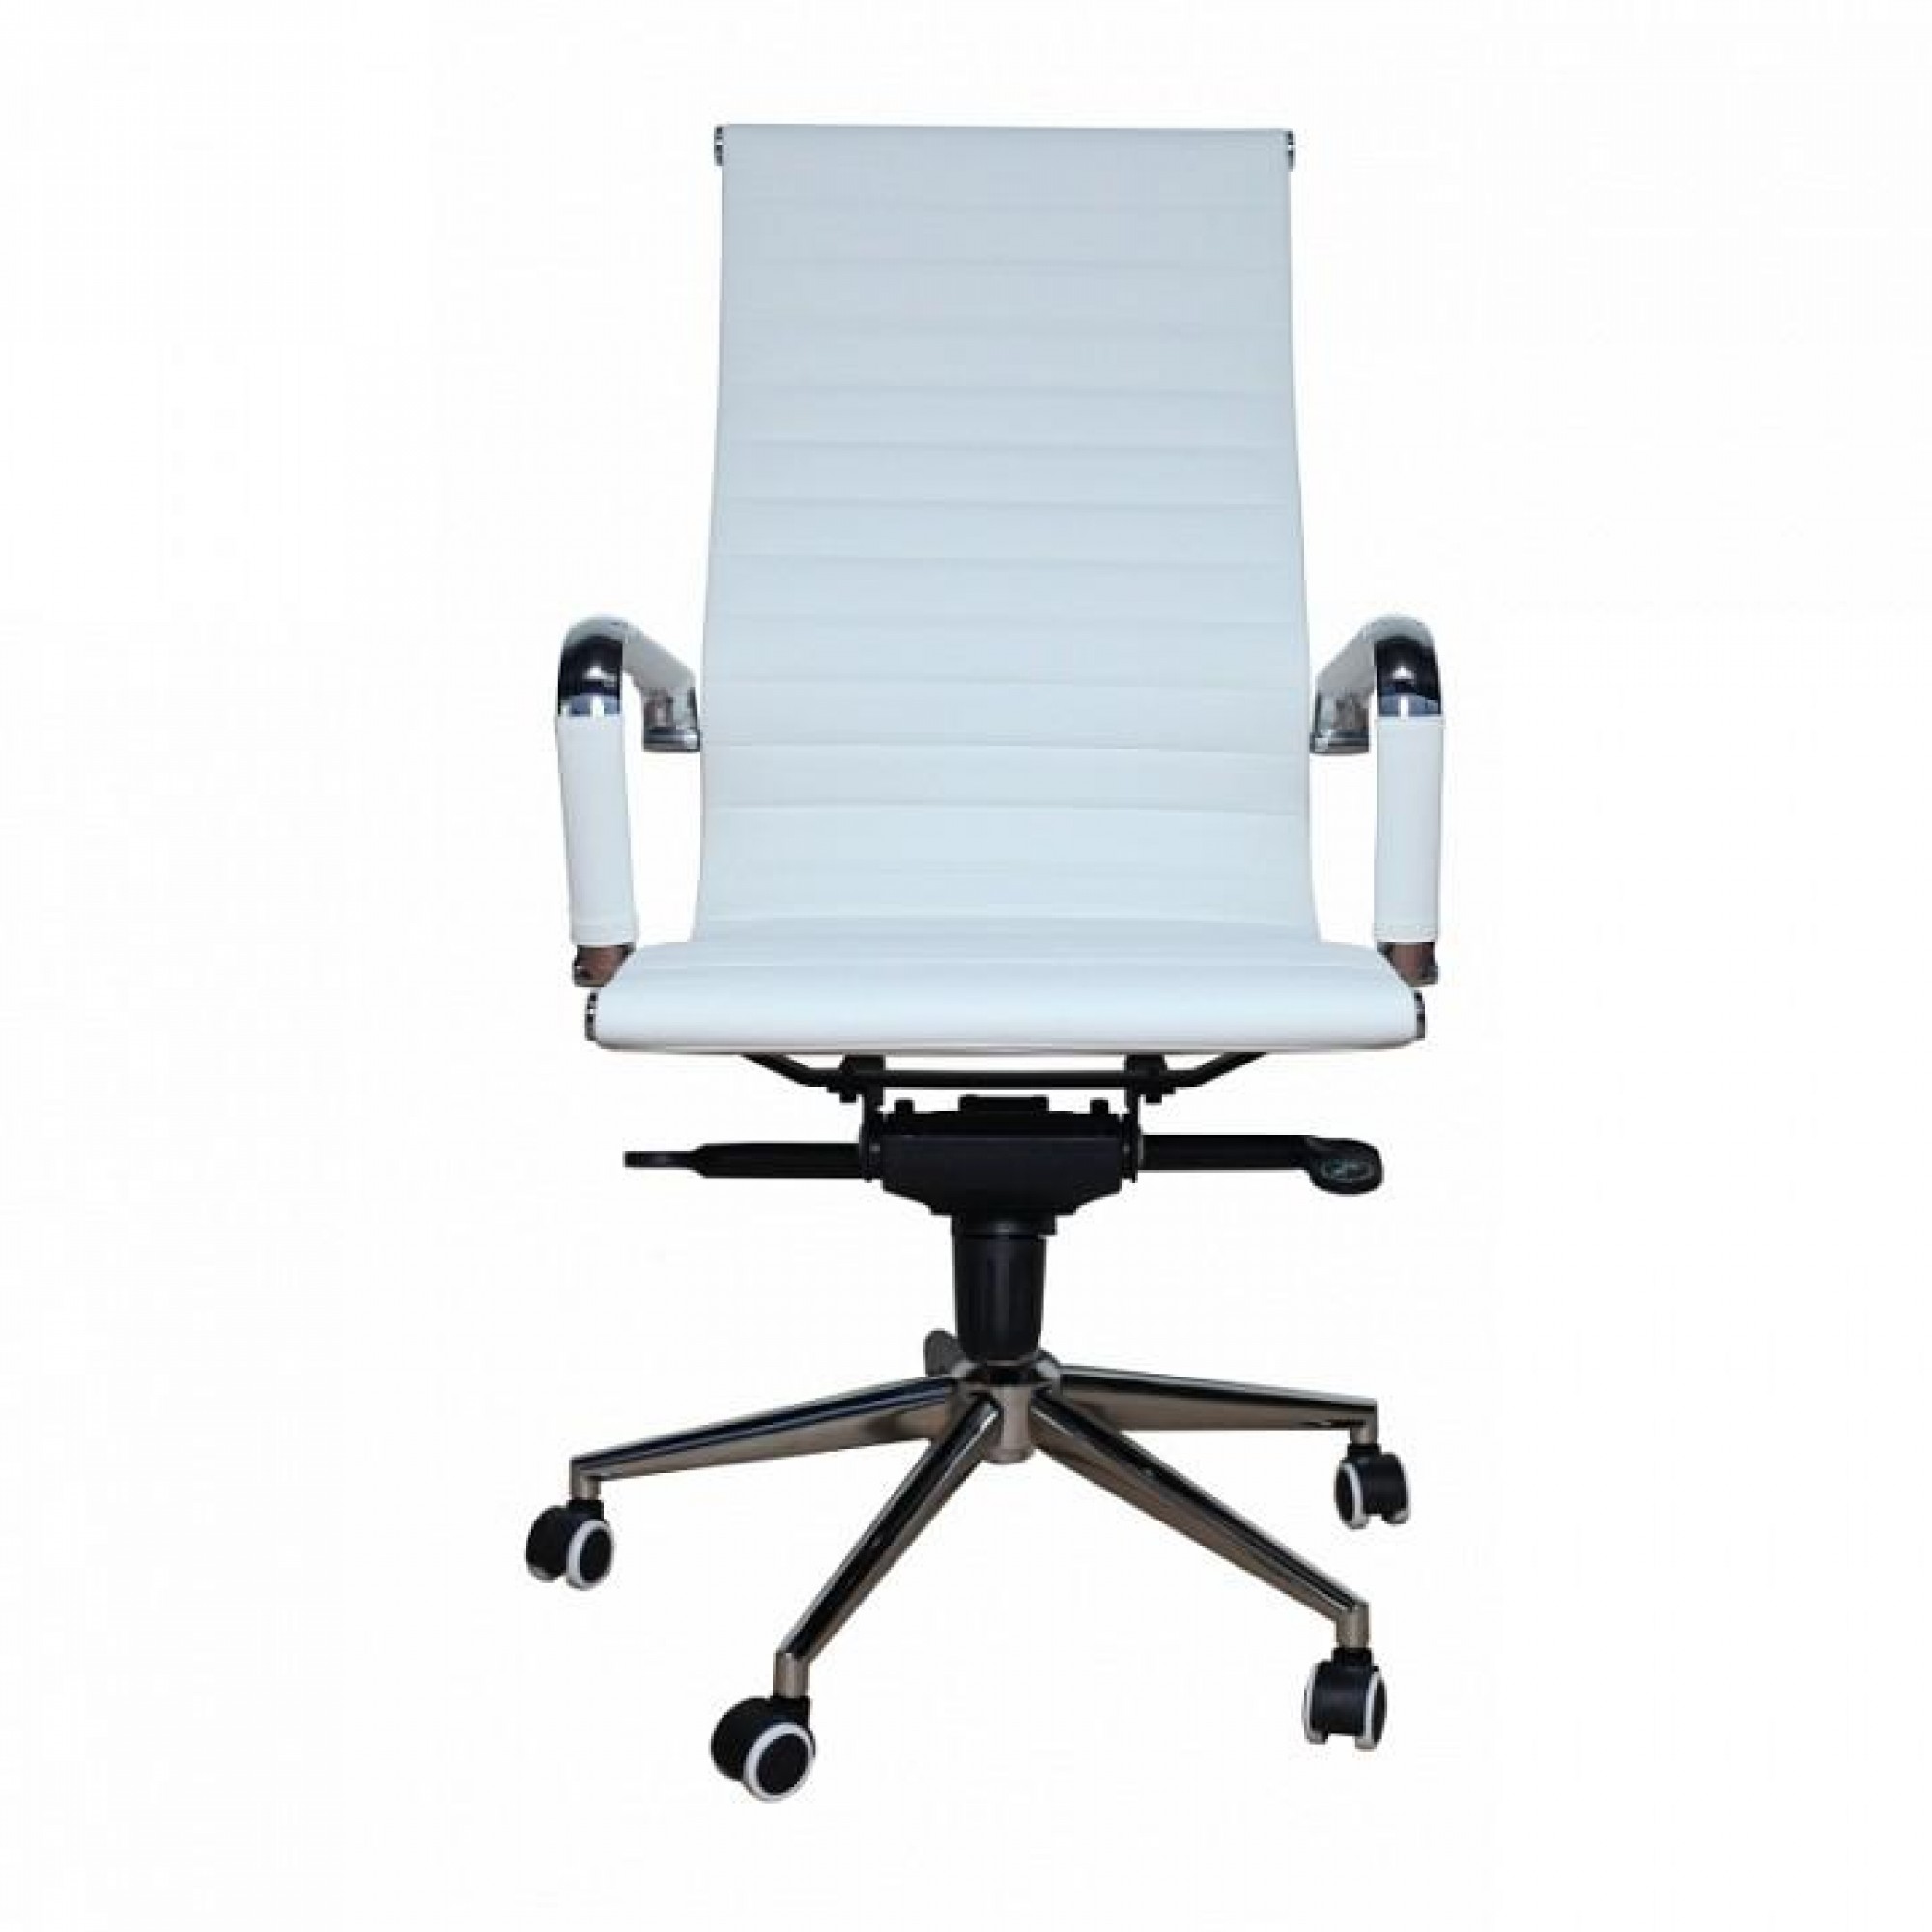 Кресло компьютерное MF-1903 404482, MF-1903 white